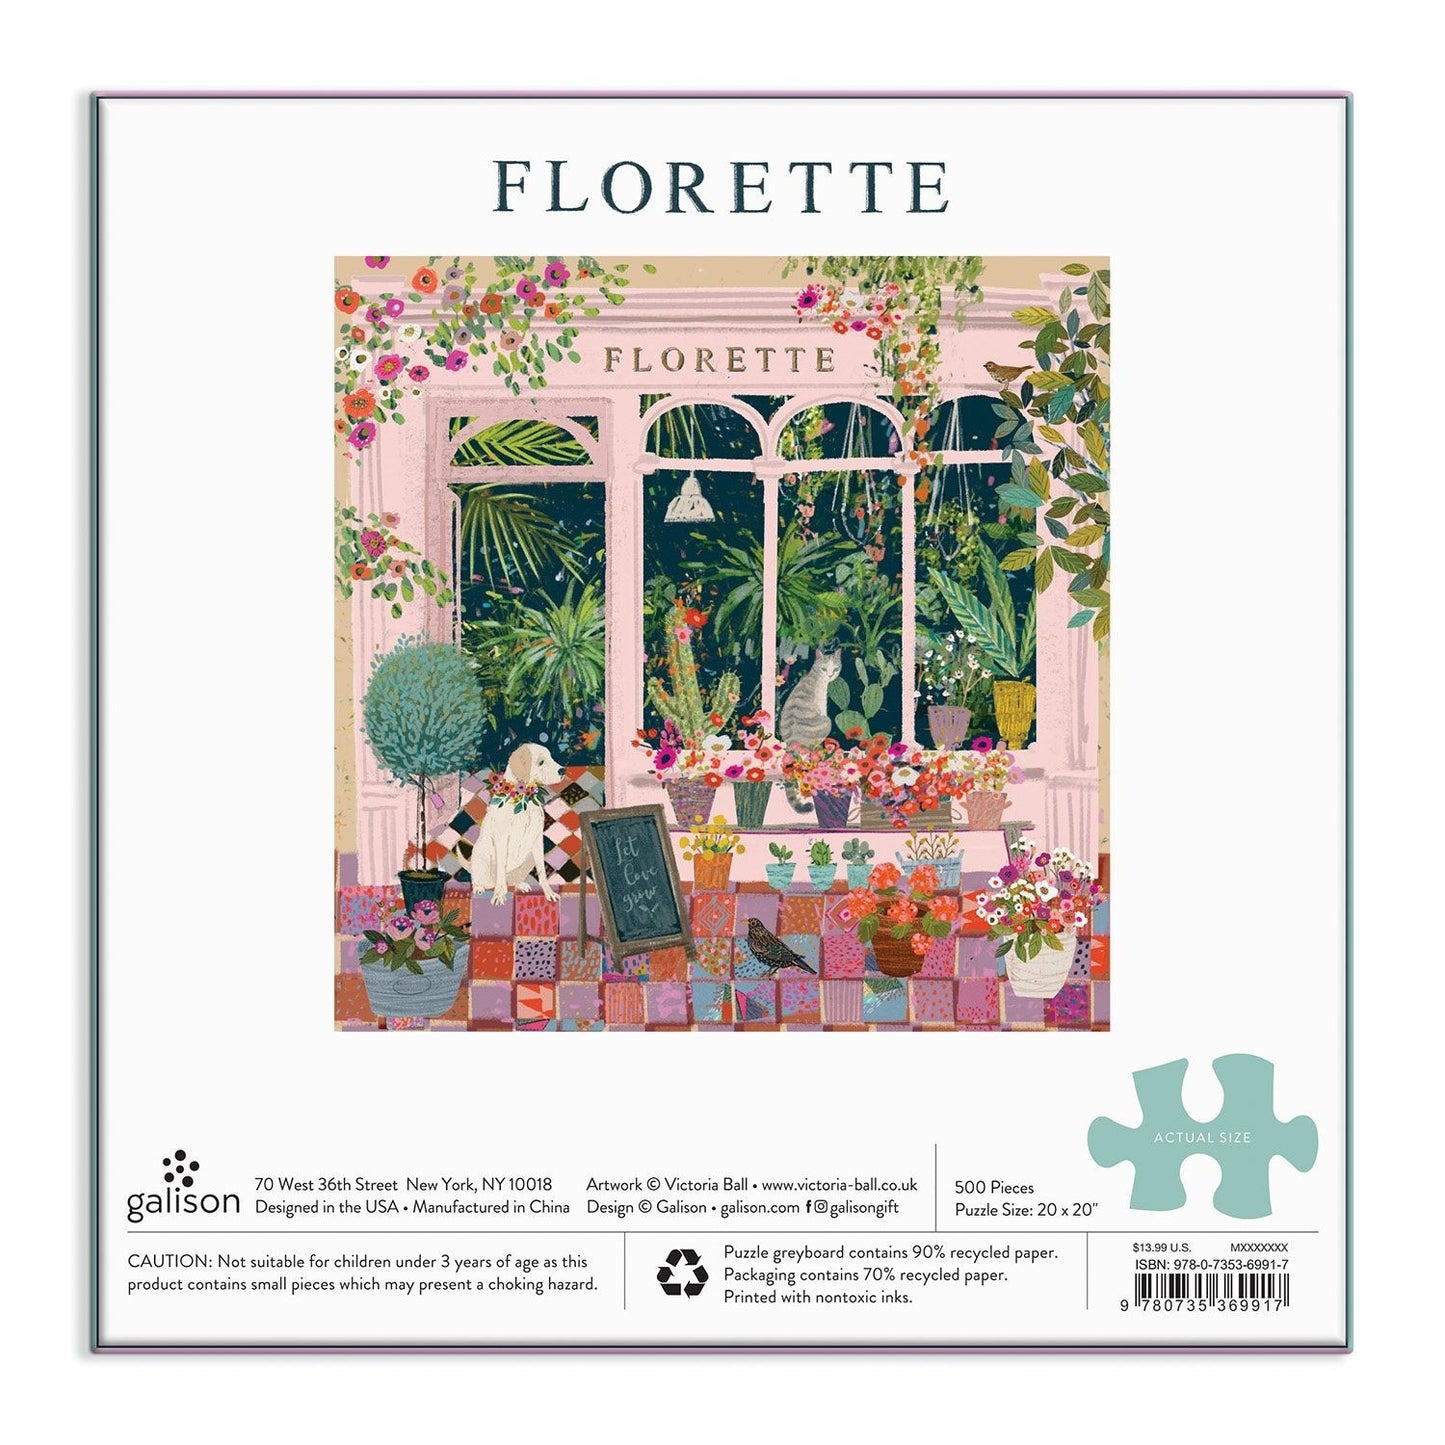 Florette 500 Piece Jigsaw Puzzle